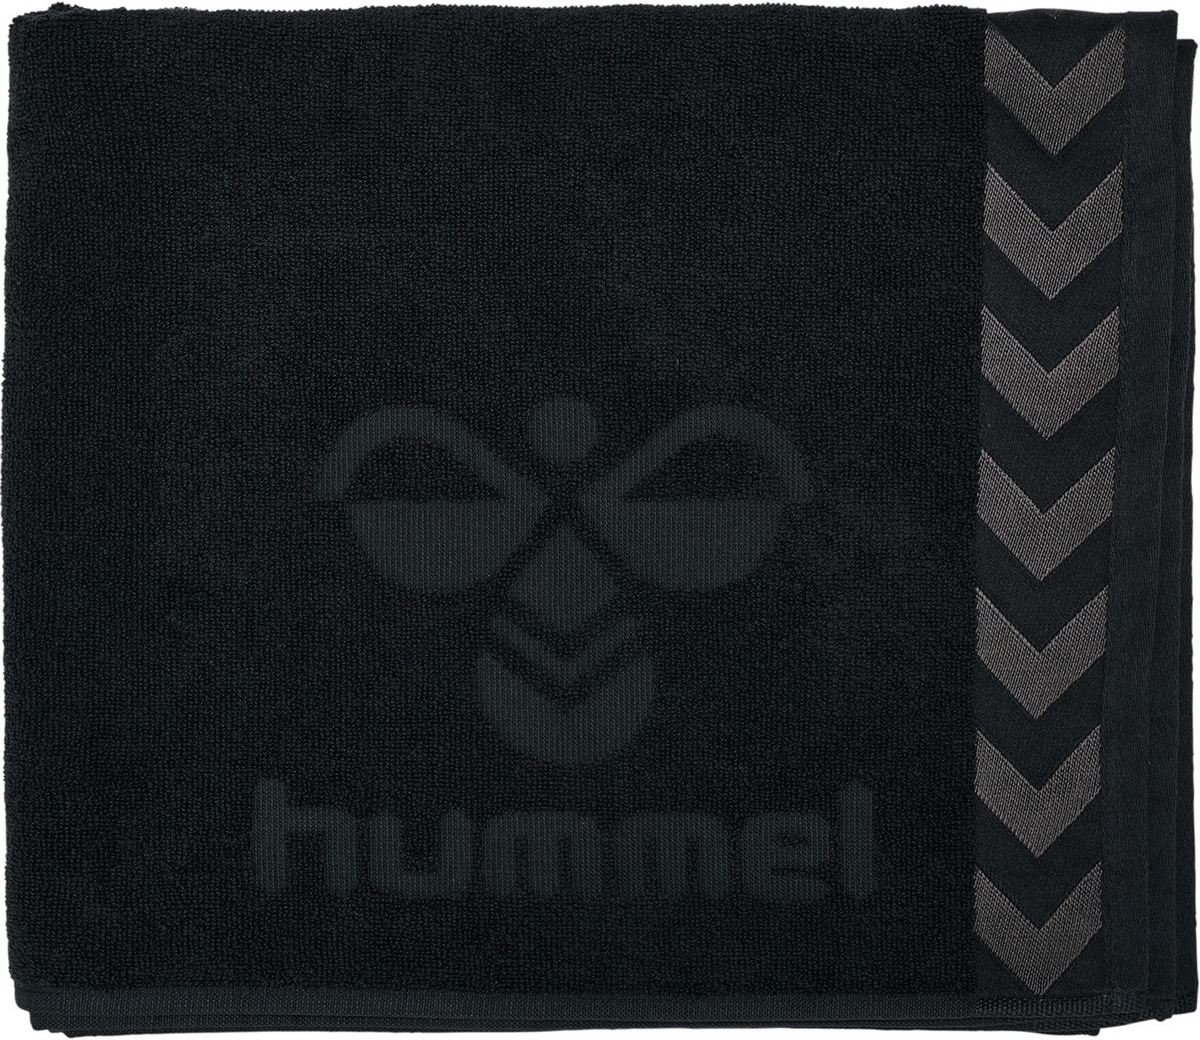 HUMMEL PETITE SERVIETTE 100x50 cm - Black